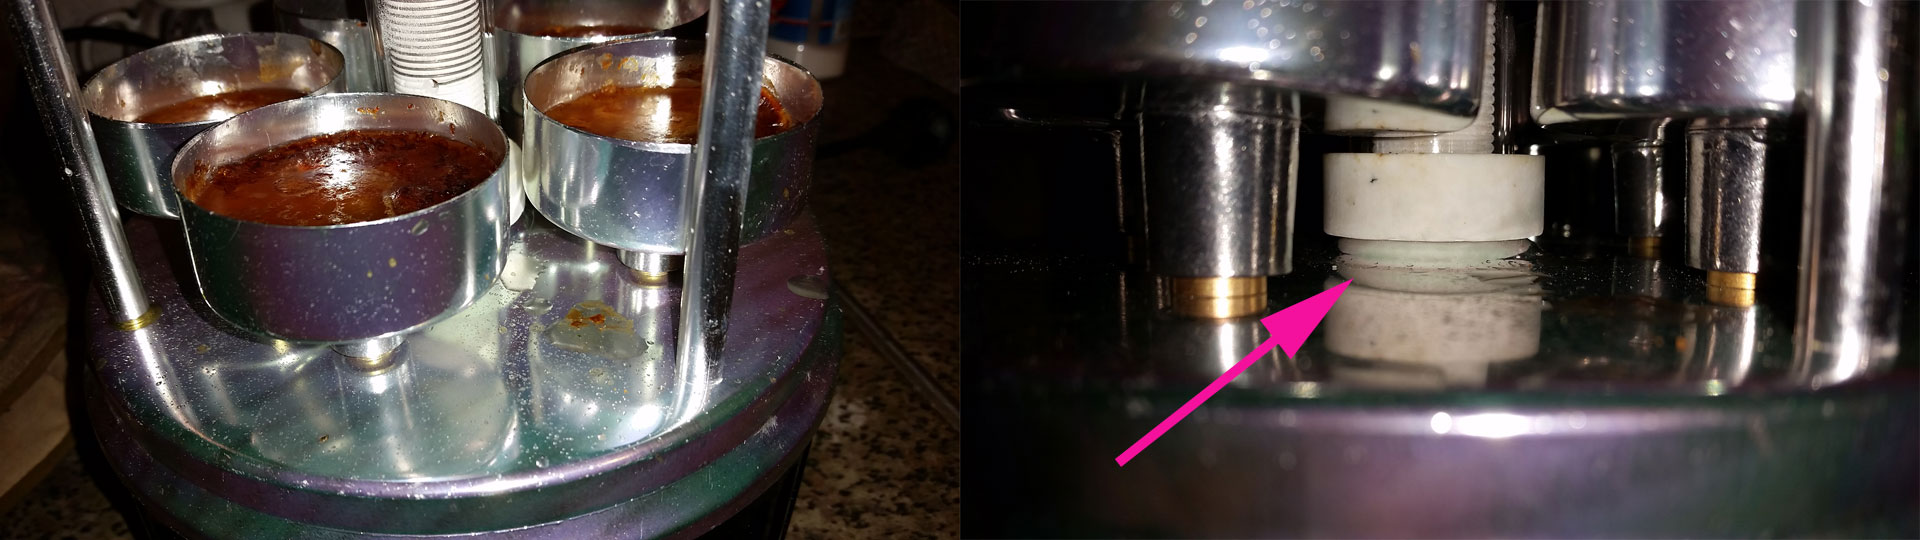 После двух загрузок шашлыка чашечки уже почти полны, но не протекают. Стрелкой отмечен прилив вокруг нагревательного элемента.